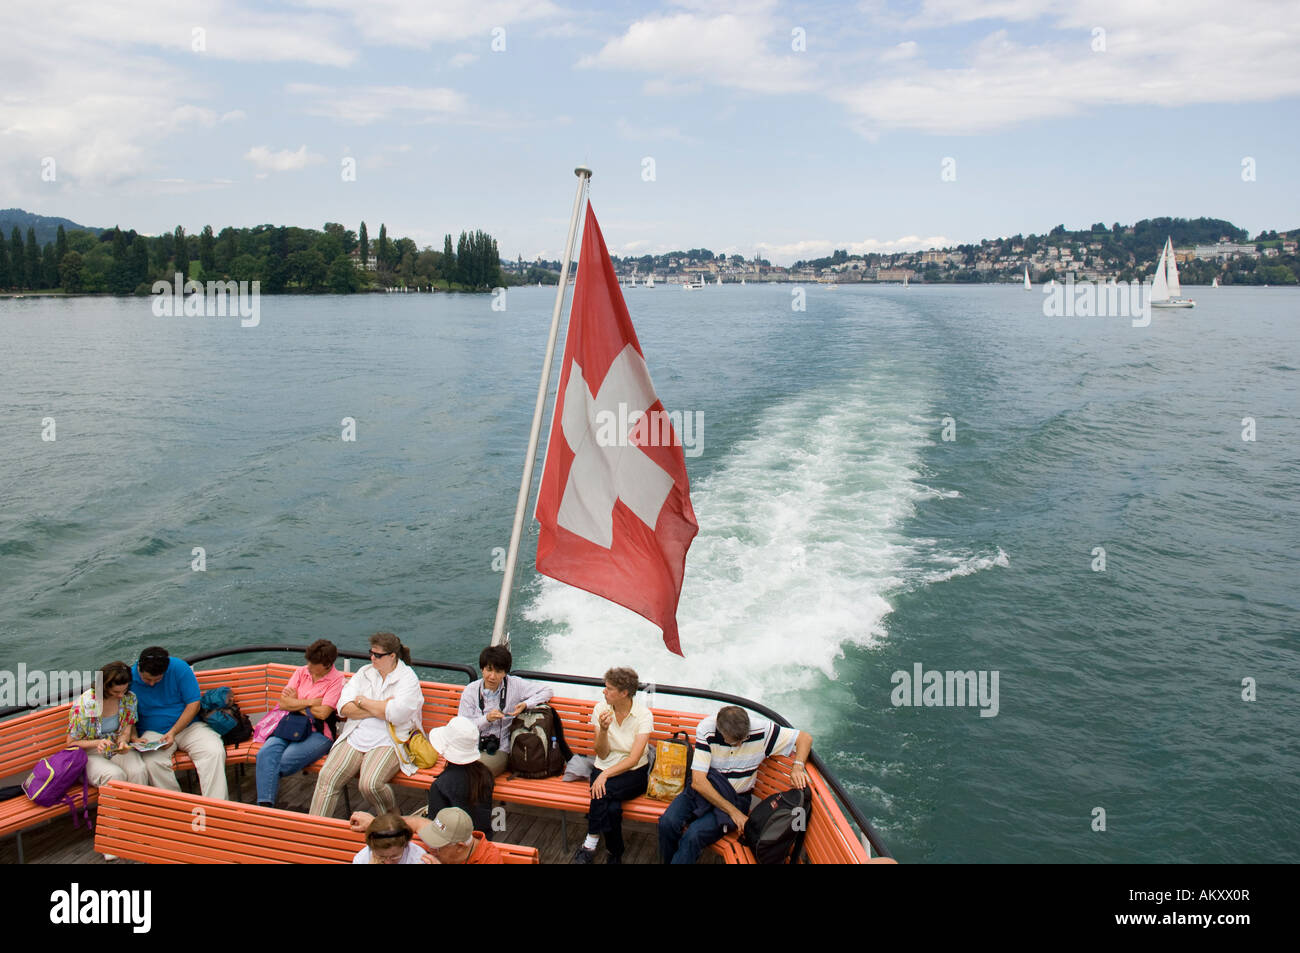 Flagg suisse sur un bateau sur le lac de Lucerne, dans le canton de Lucerne, Suisse Banque D'Images